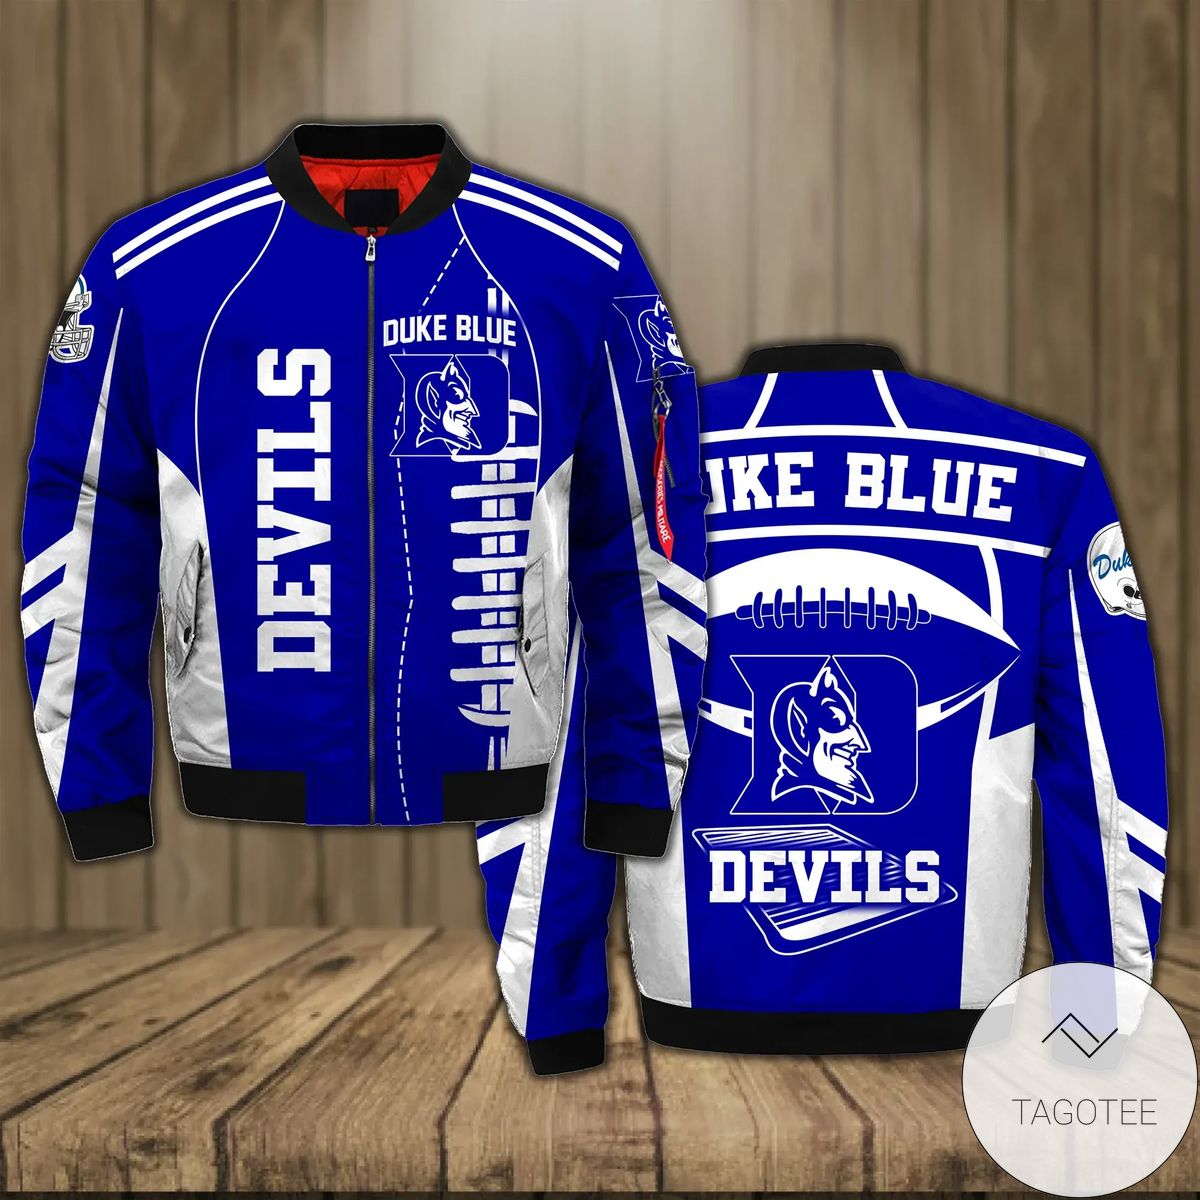 Duke Blue Devils Football Team 3d Printed Unisex Bomber Jacket